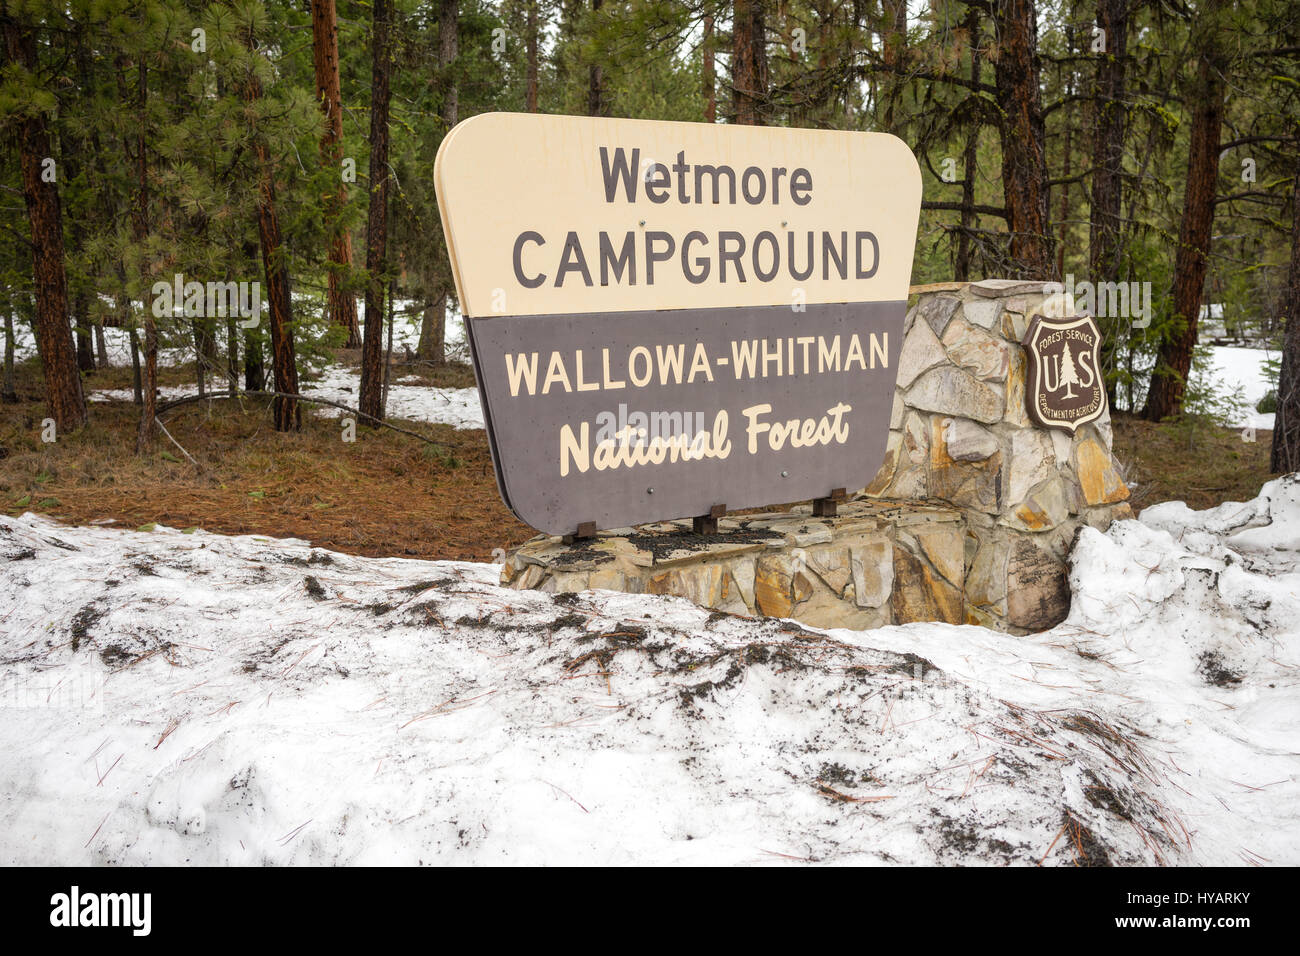 Neve fresca si erge attorno al campeggio Wetmore accedi Wallowa-Whitman National Forest Foto Stock